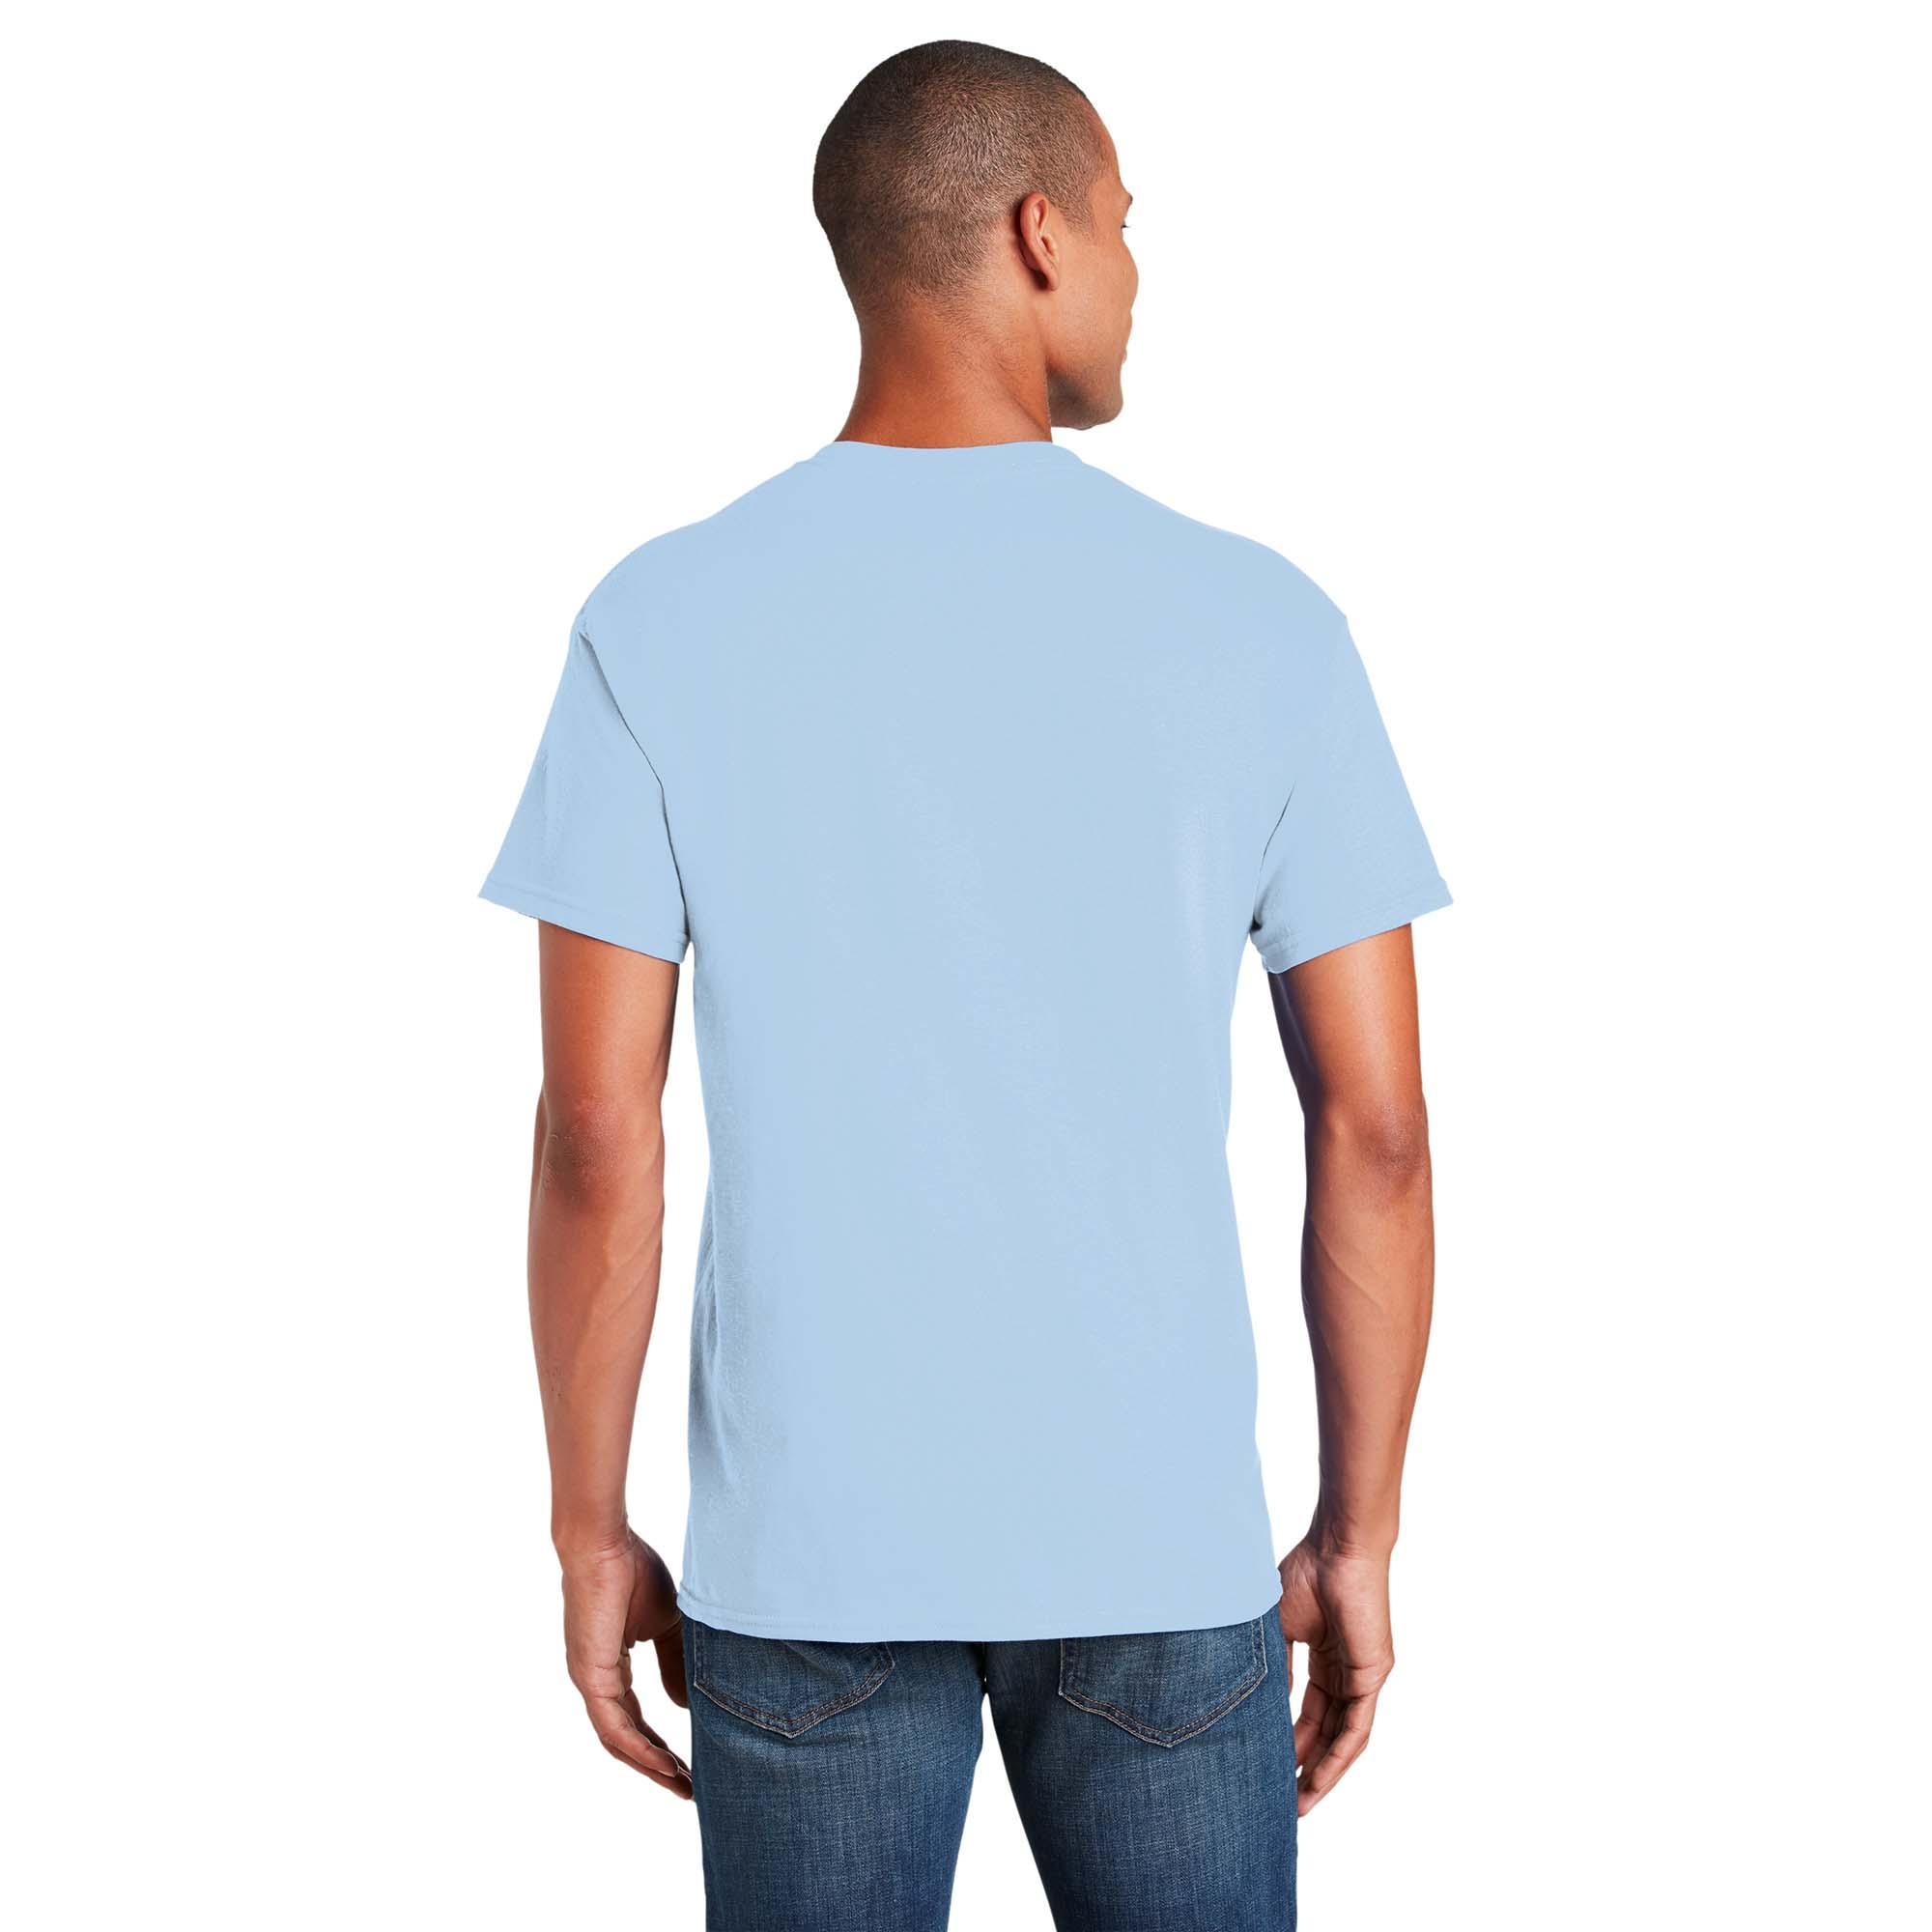 Tog Rejse Andre steder Gildan 5000 Heavy Cotton T-Shirt - Light Blue | FullSource.com